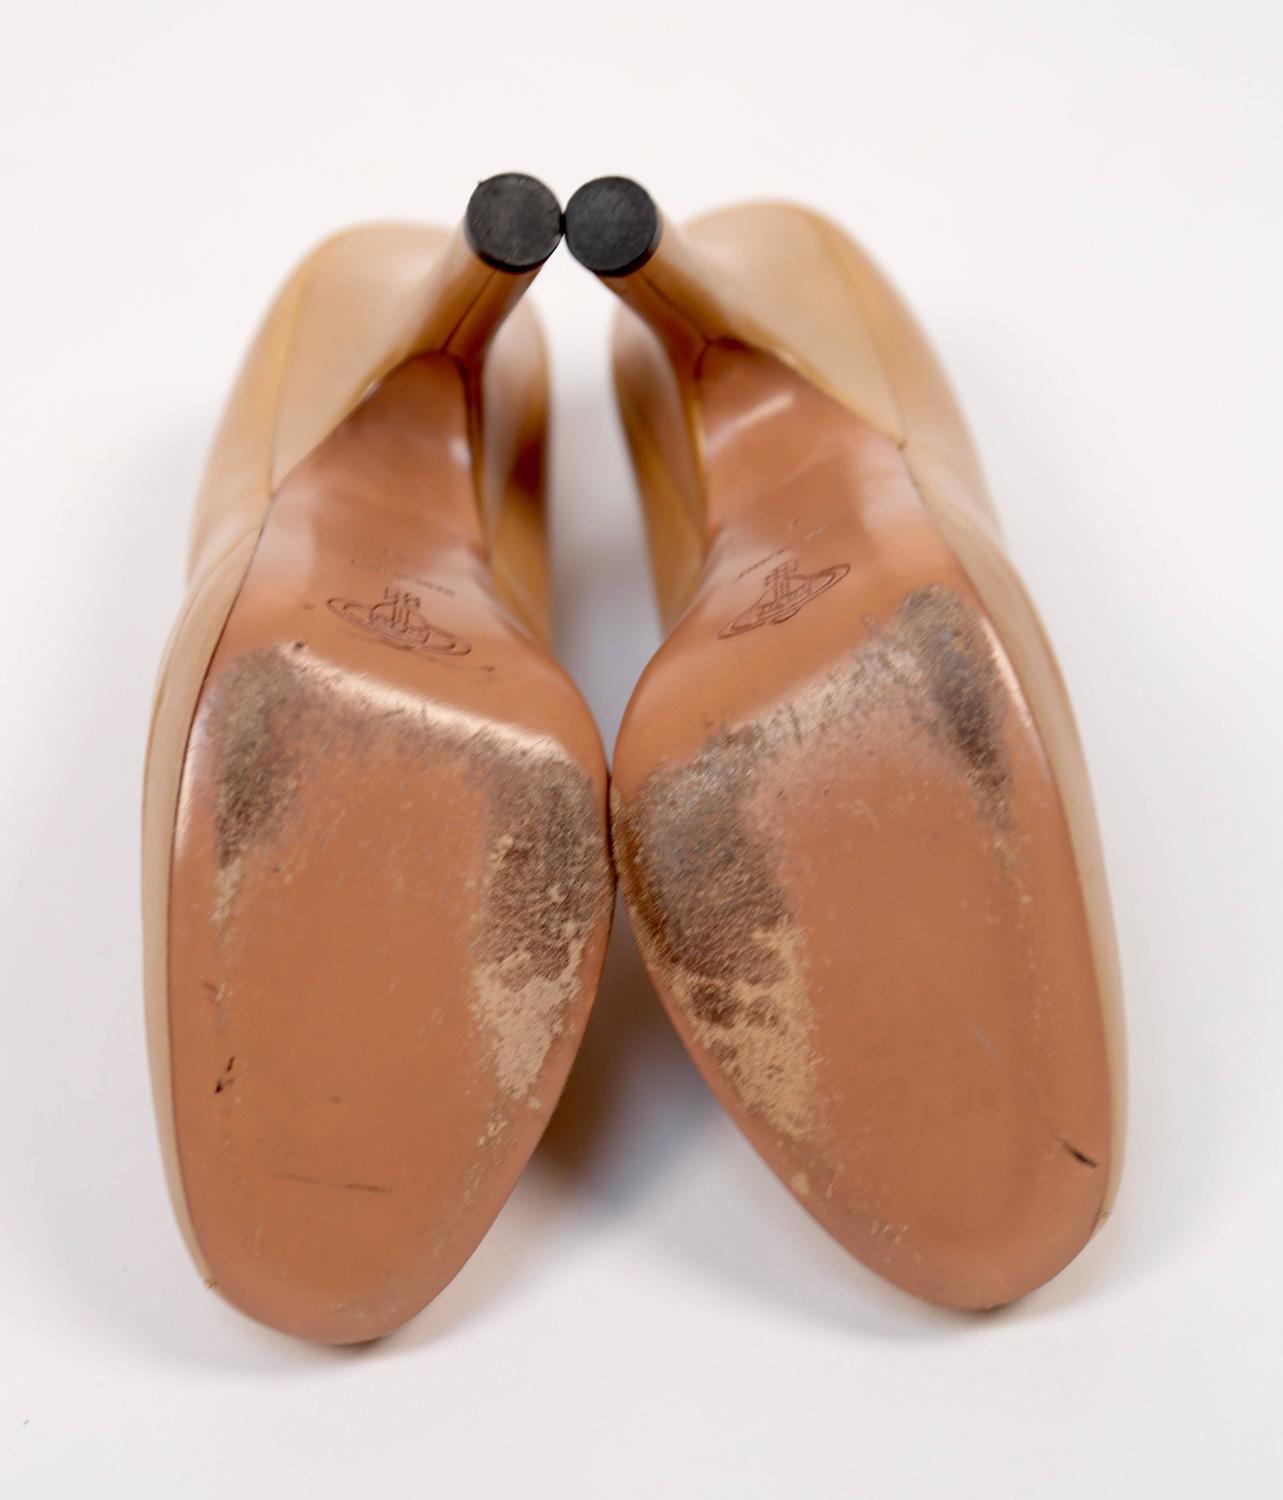 VIVIENNE WESTWOOD tan leather platform heels - 41 For Sale at 1stdibs